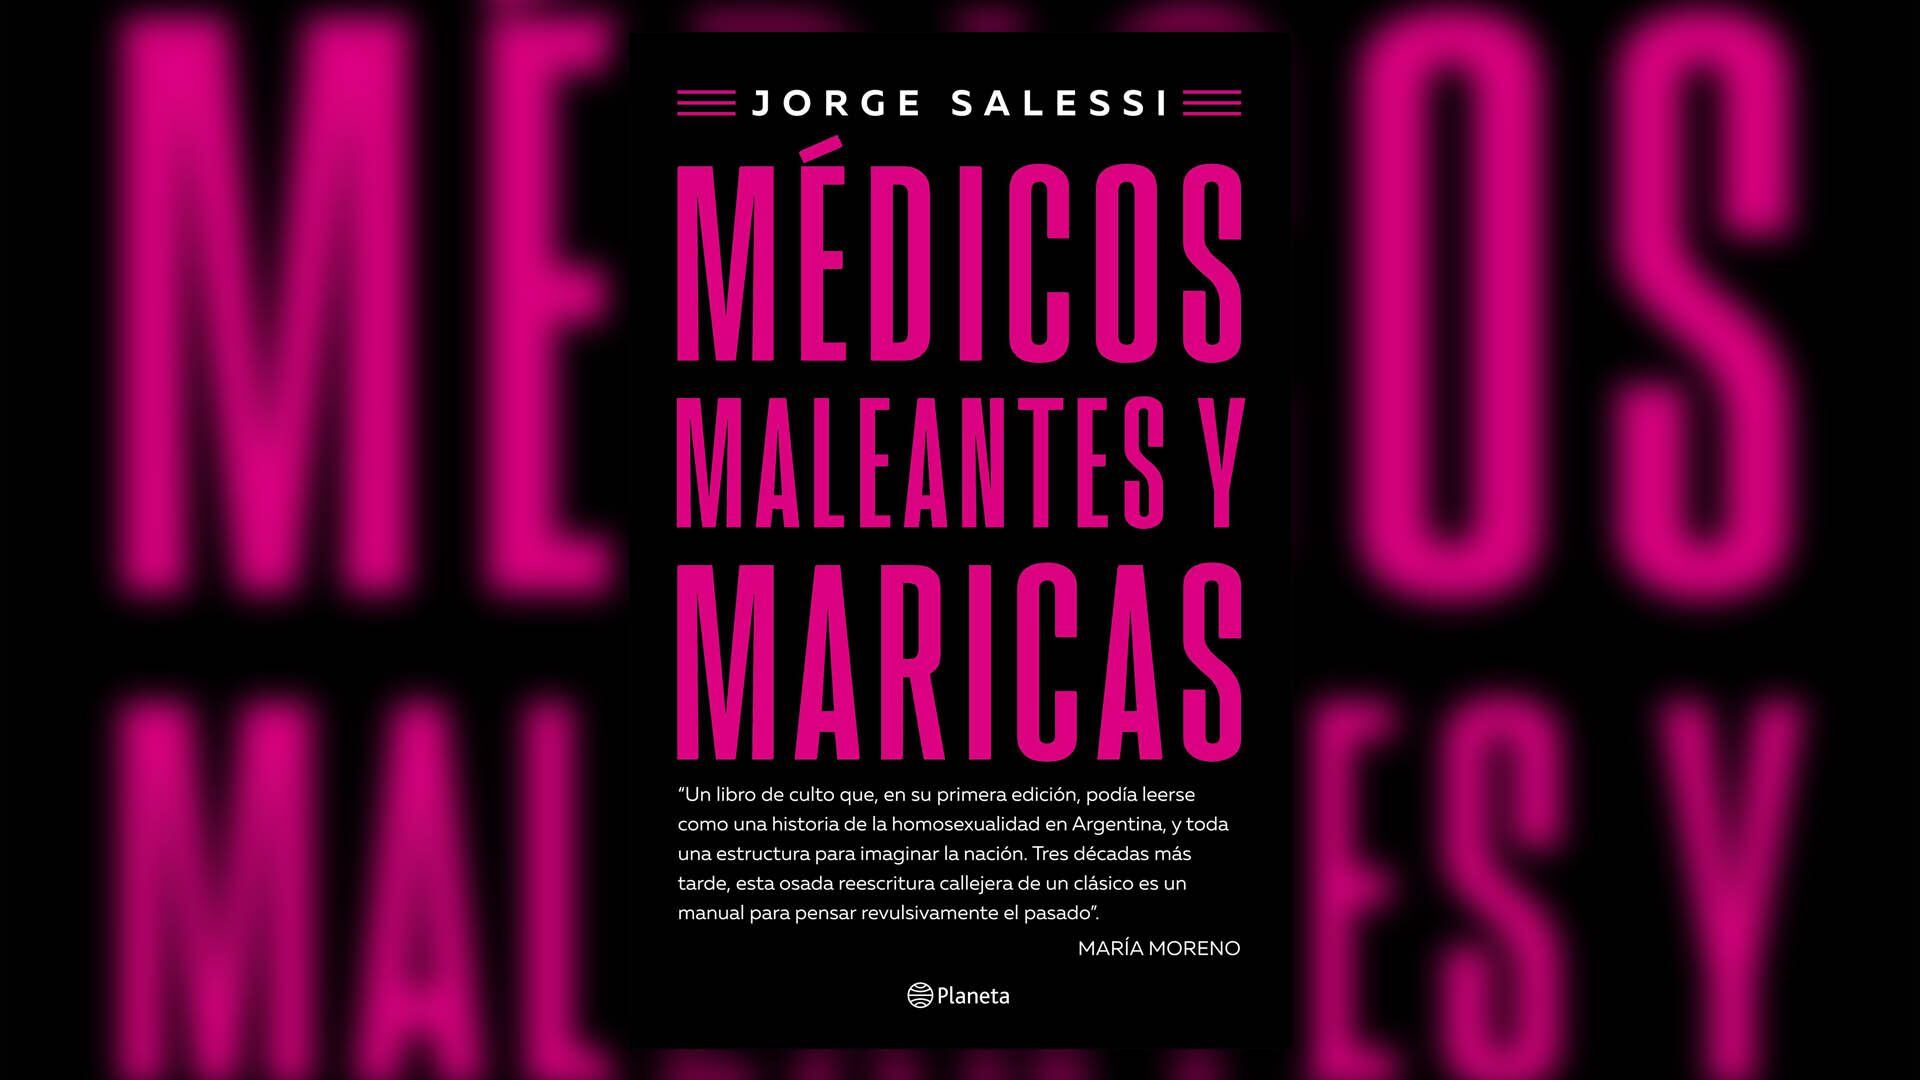 Jorge Salessi - Medicos maleantes y maricas